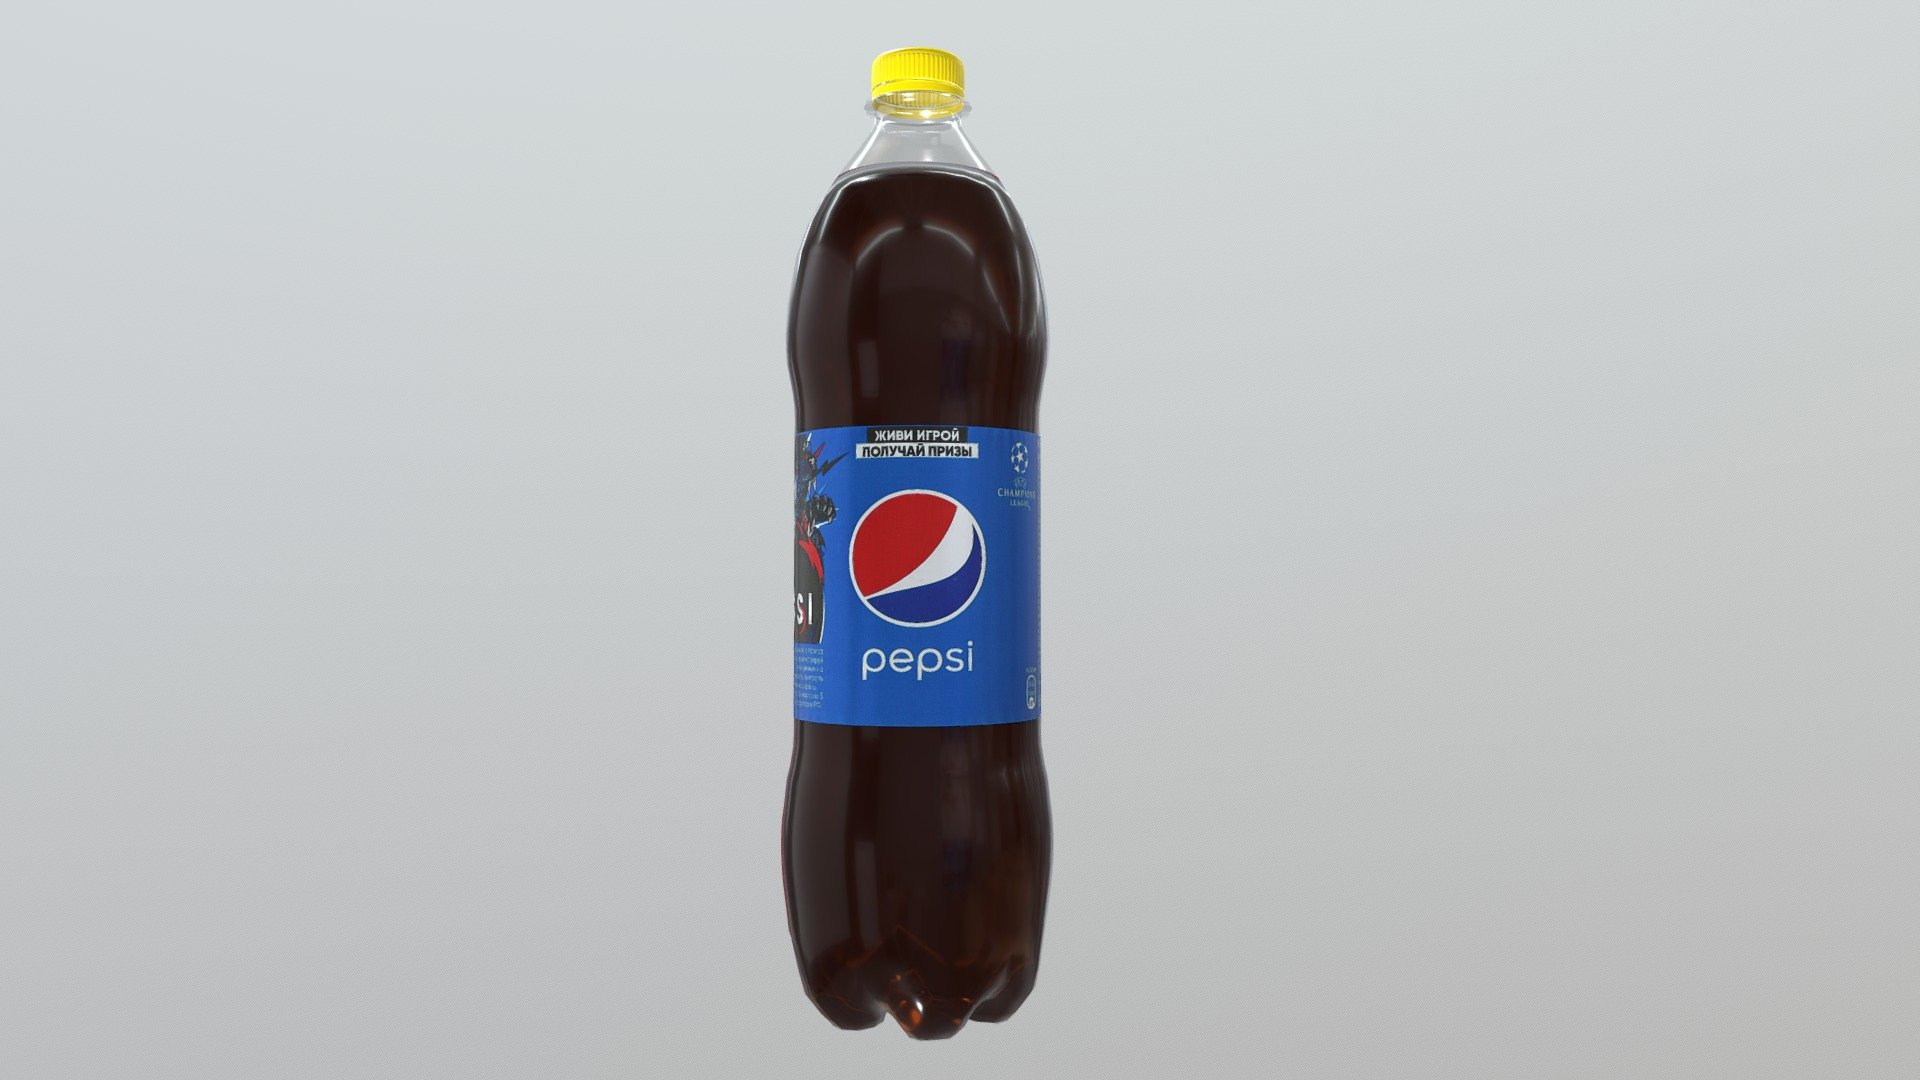 Pepsi (Messi promo) 1.25L [2018] - 3D model by combine_soldier 3d model